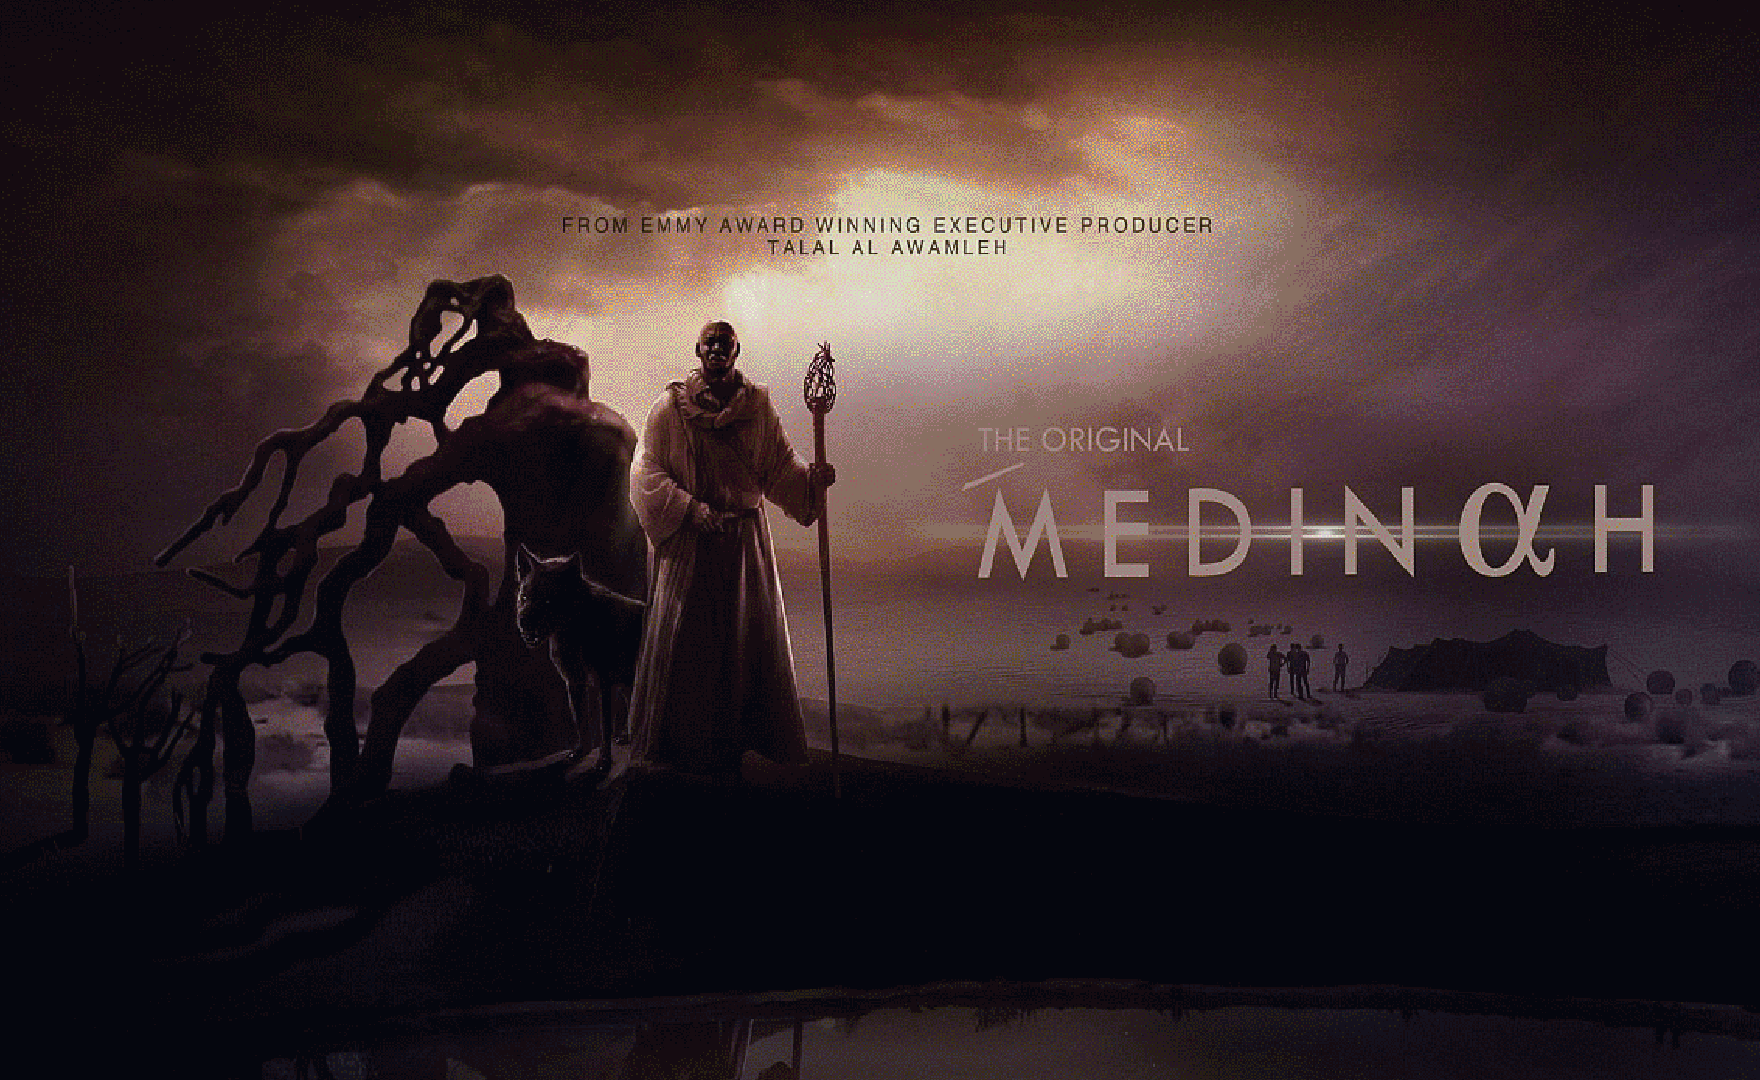 MEDINAH